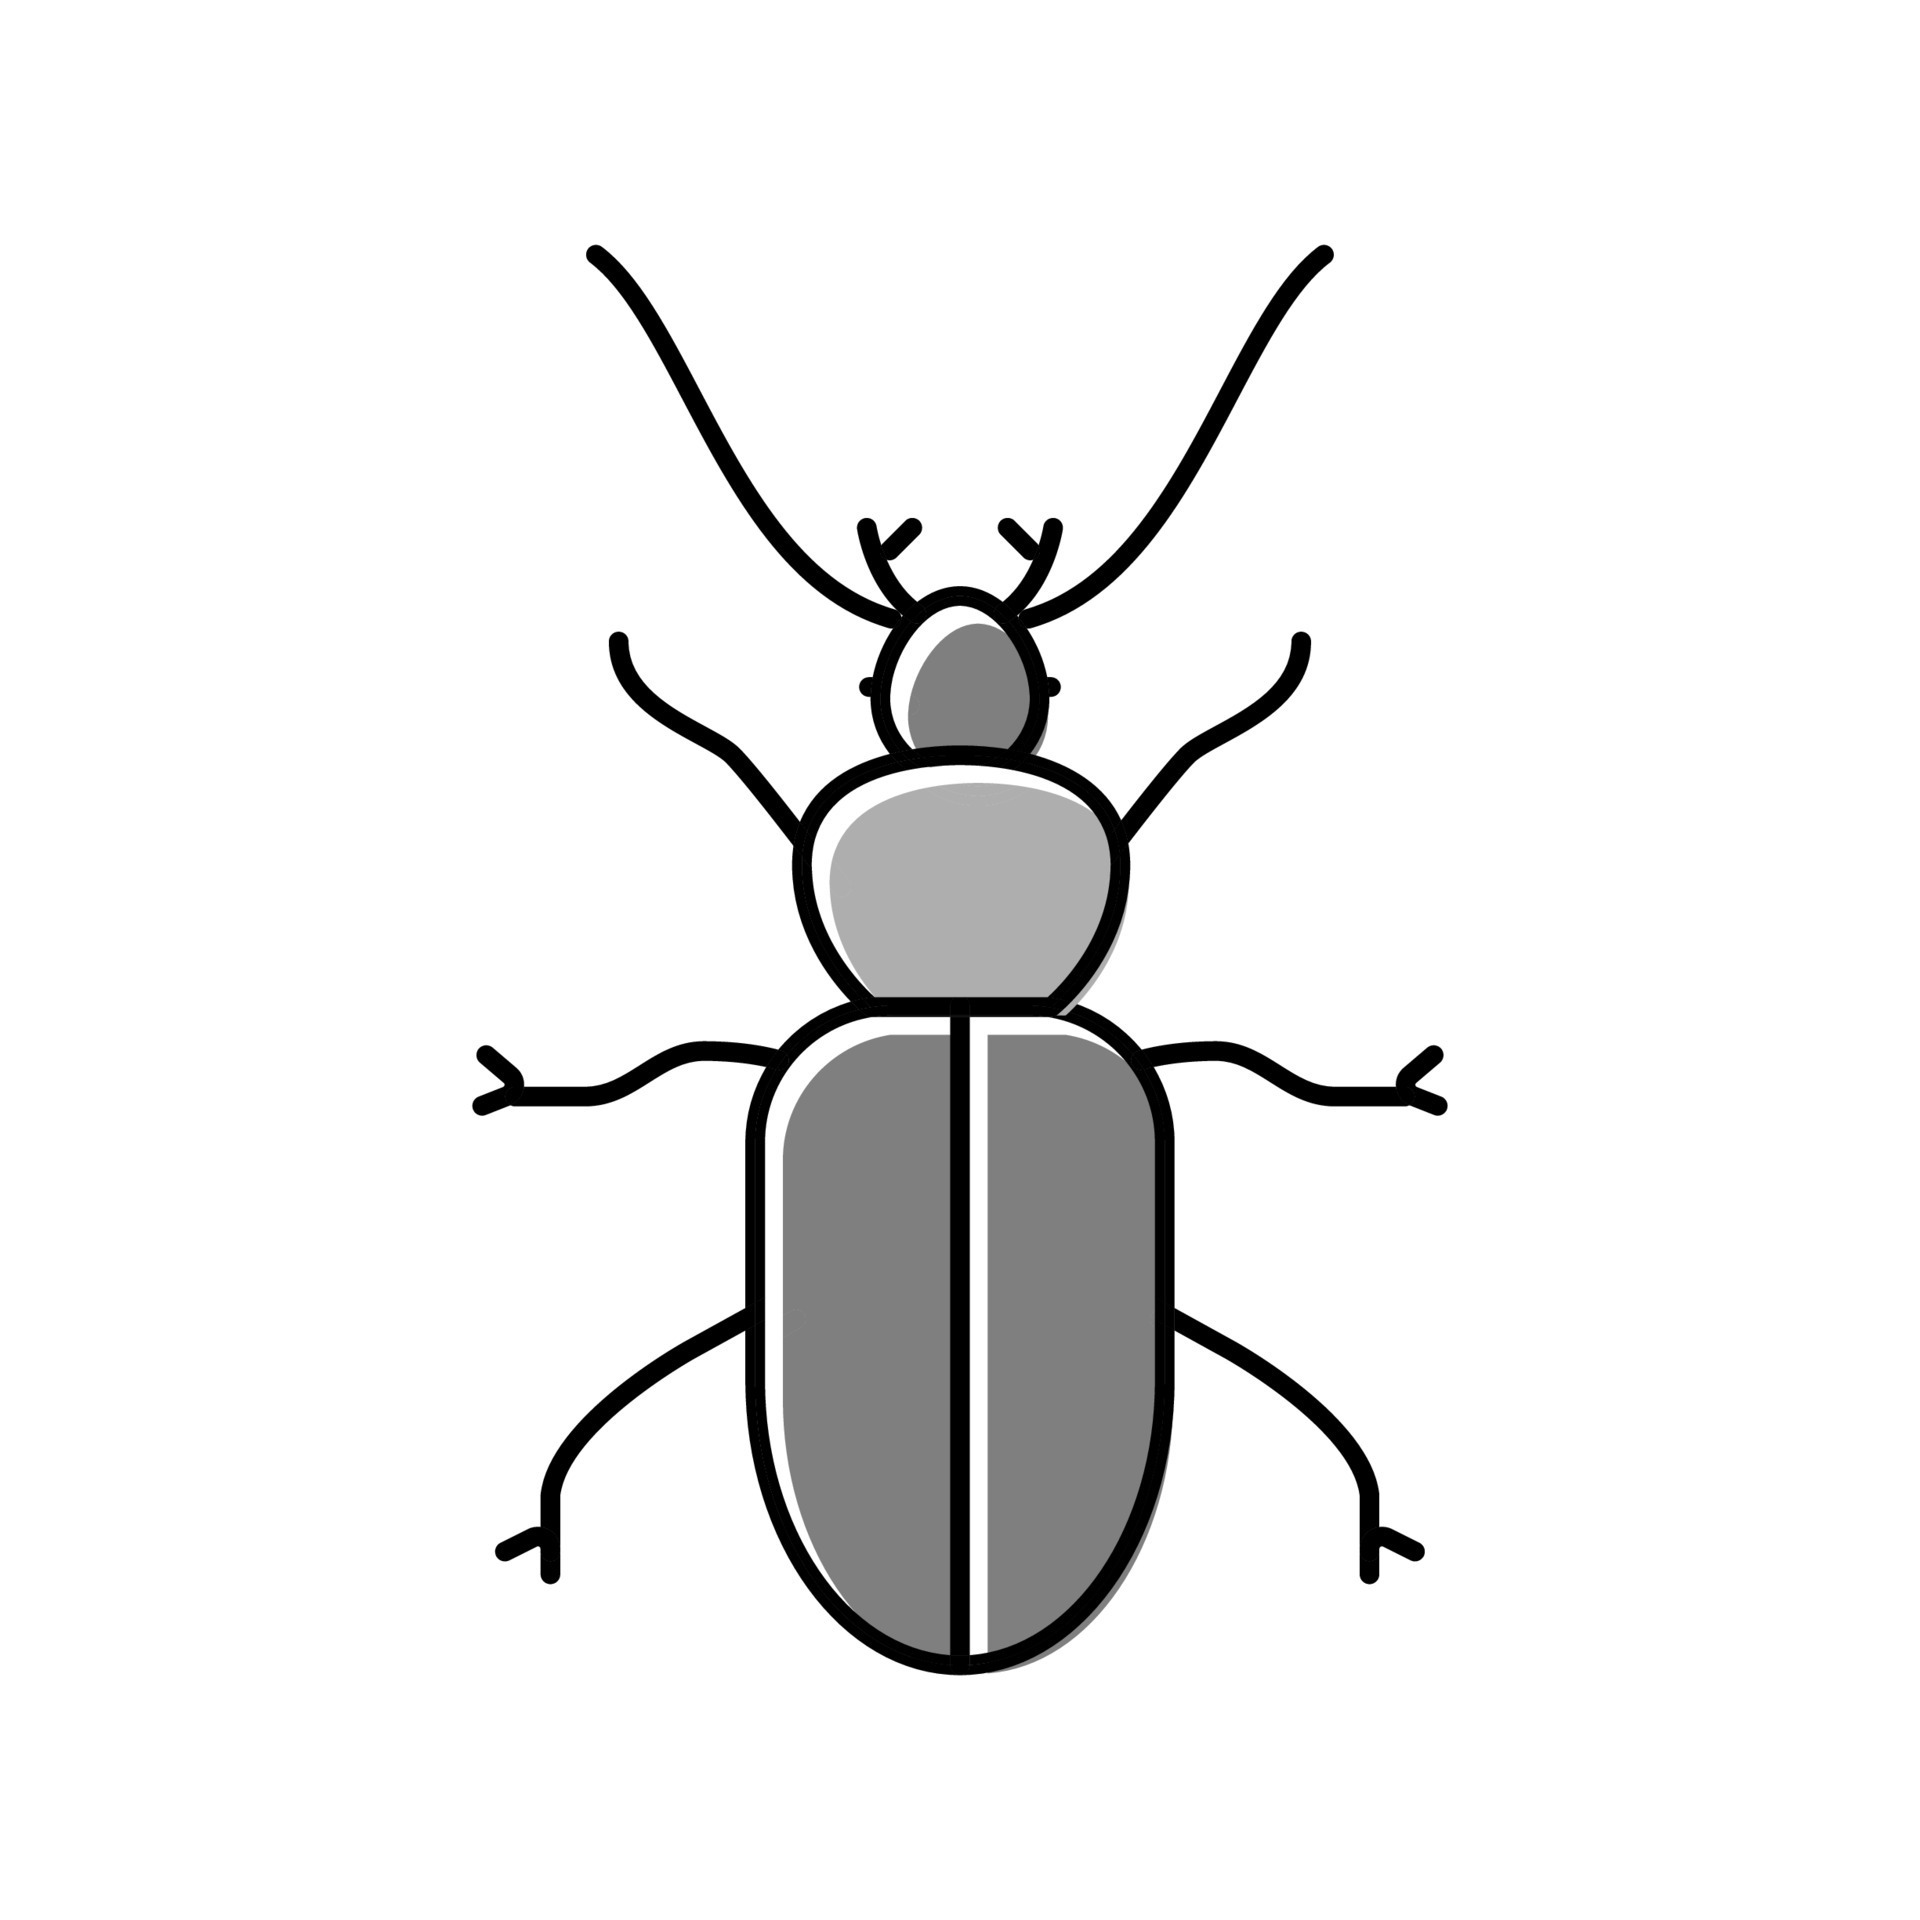 ensemble de coléoptères, insectes. brillant Bugs de divers couleurs.  vecteur graphique. 23852870 Art vectoriel chez Vecteezy